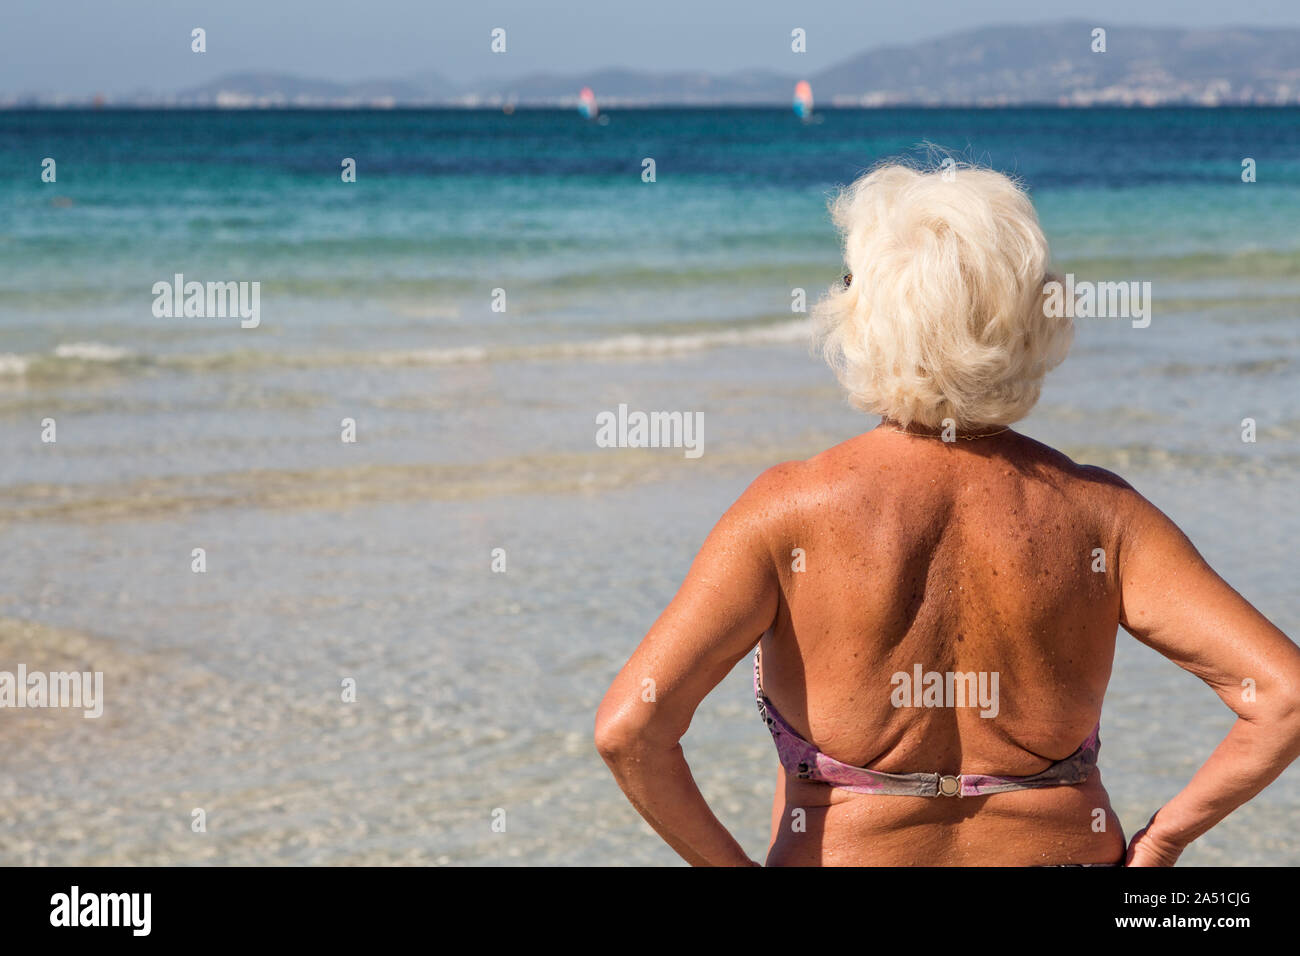 Beach lesbians grannies